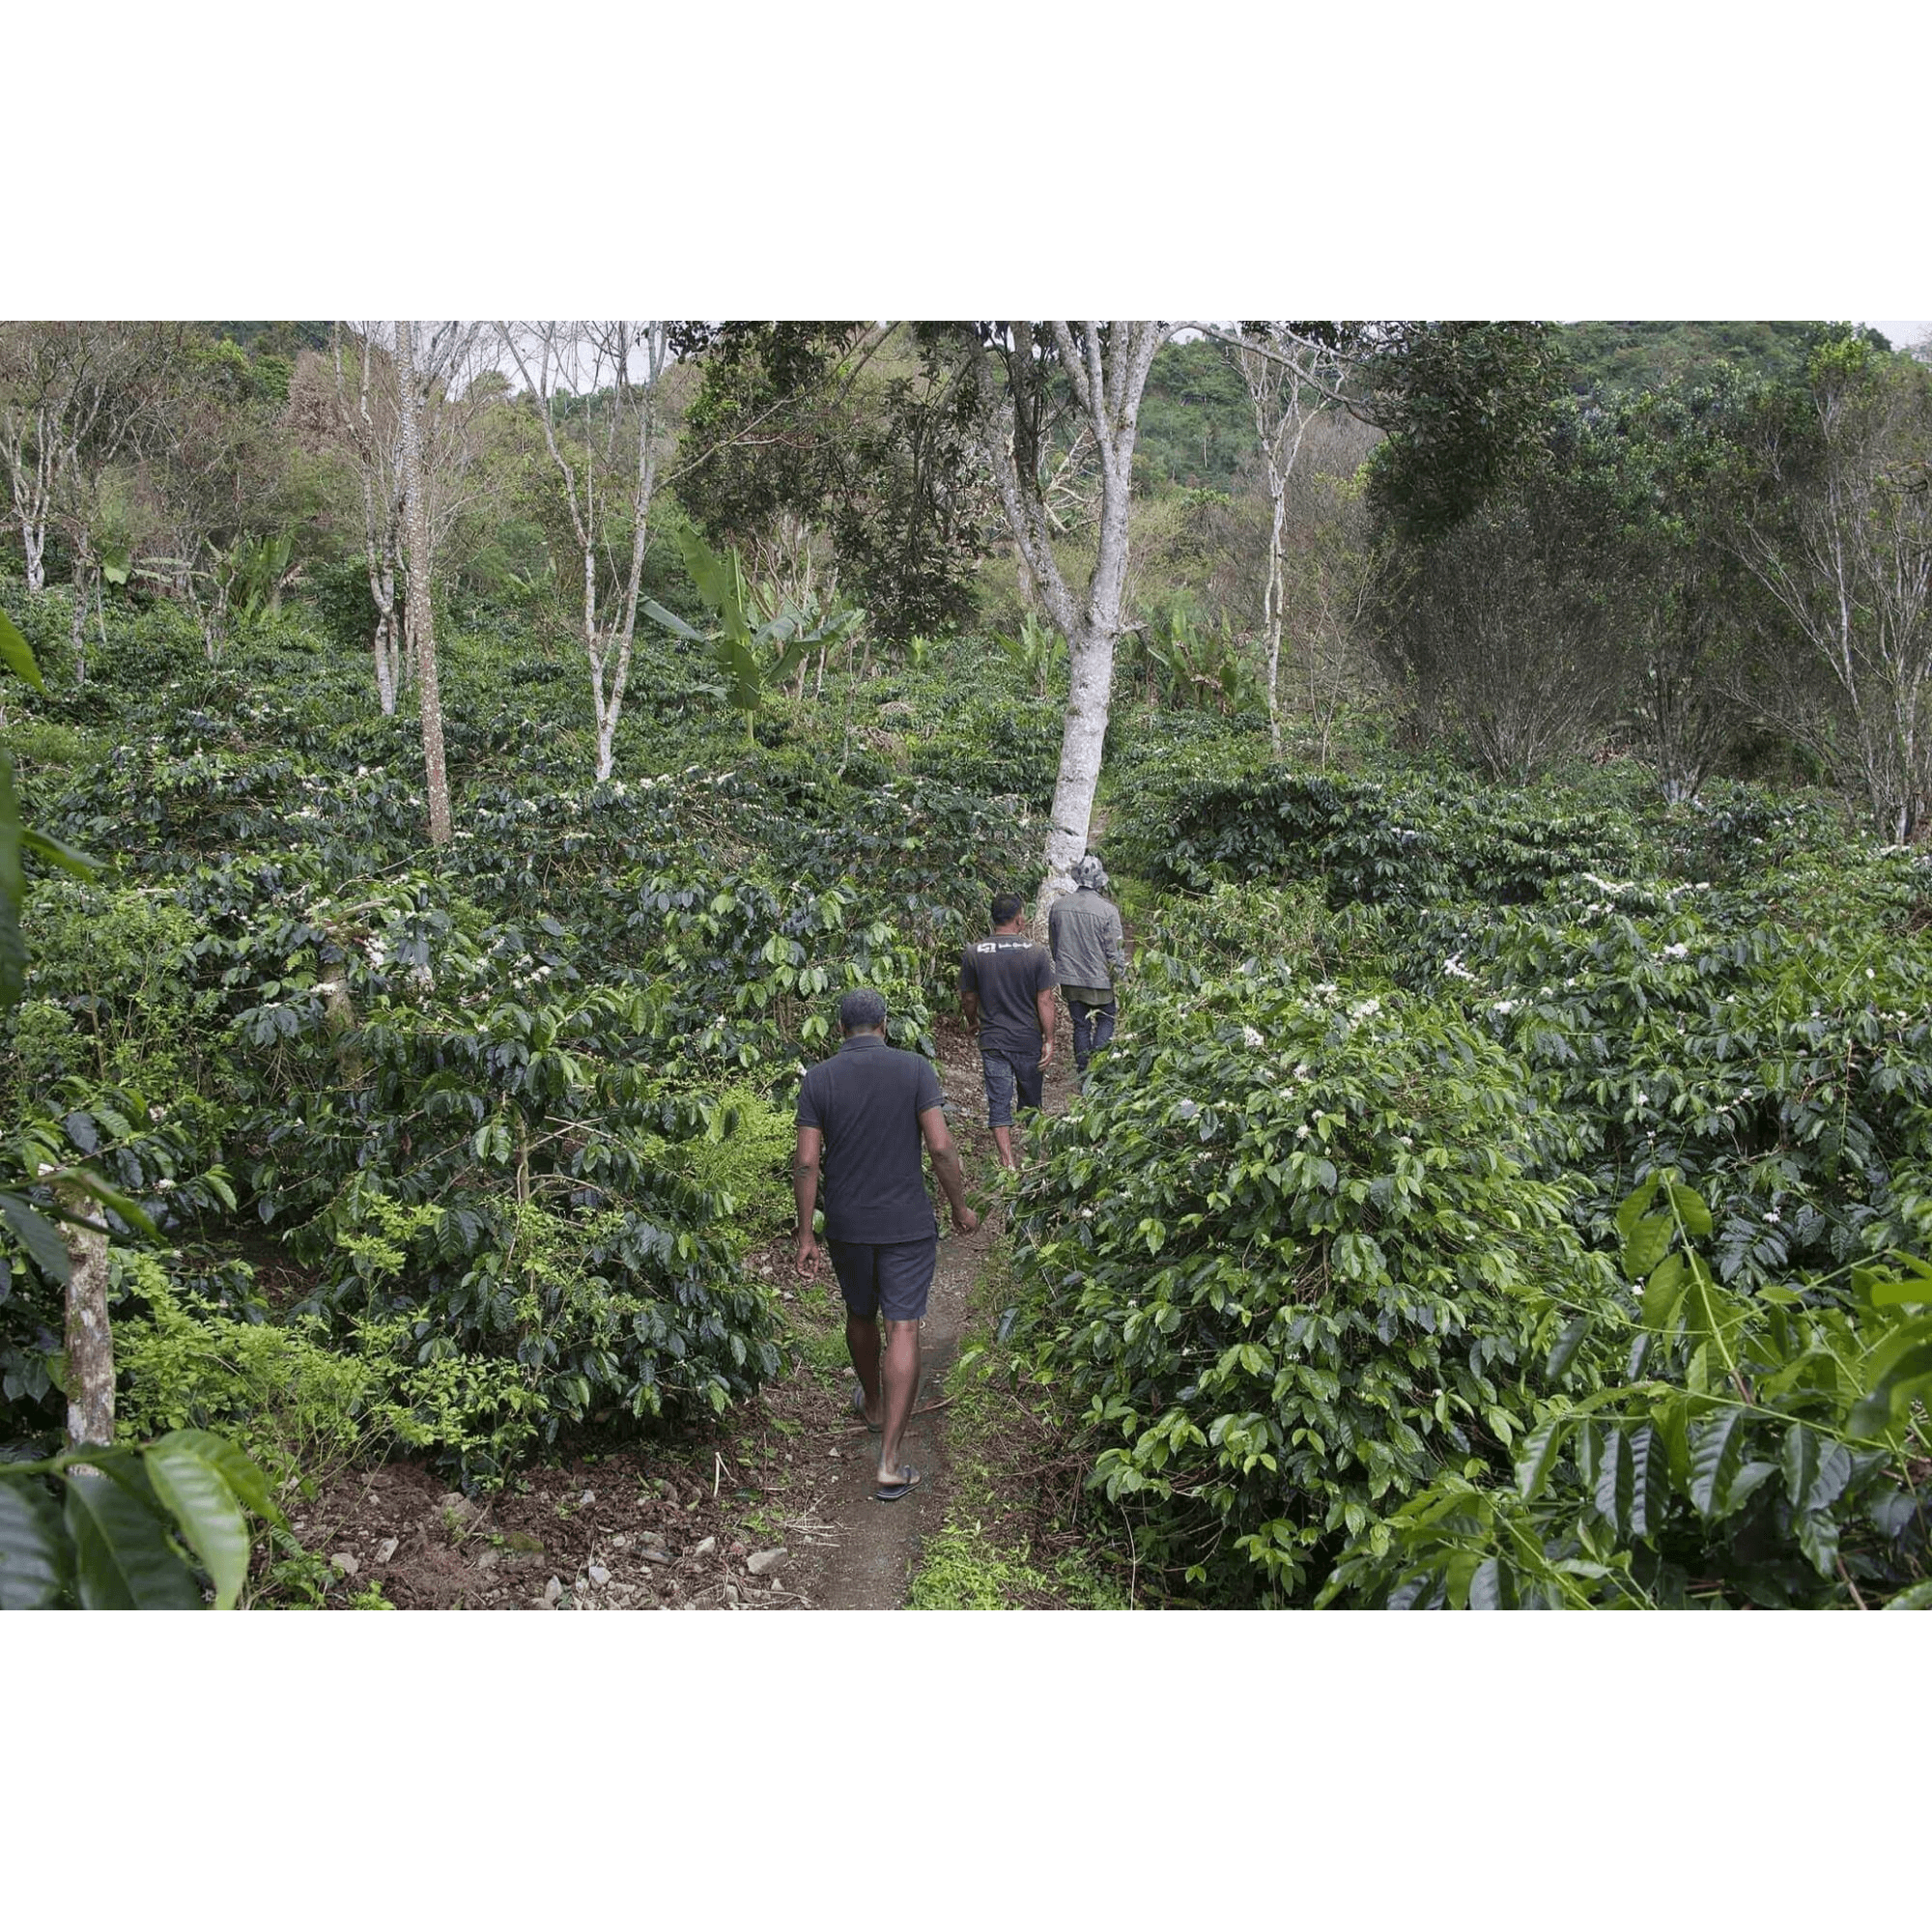 Wih Bersih Village Producing coffee for Orangutan Project Coffee